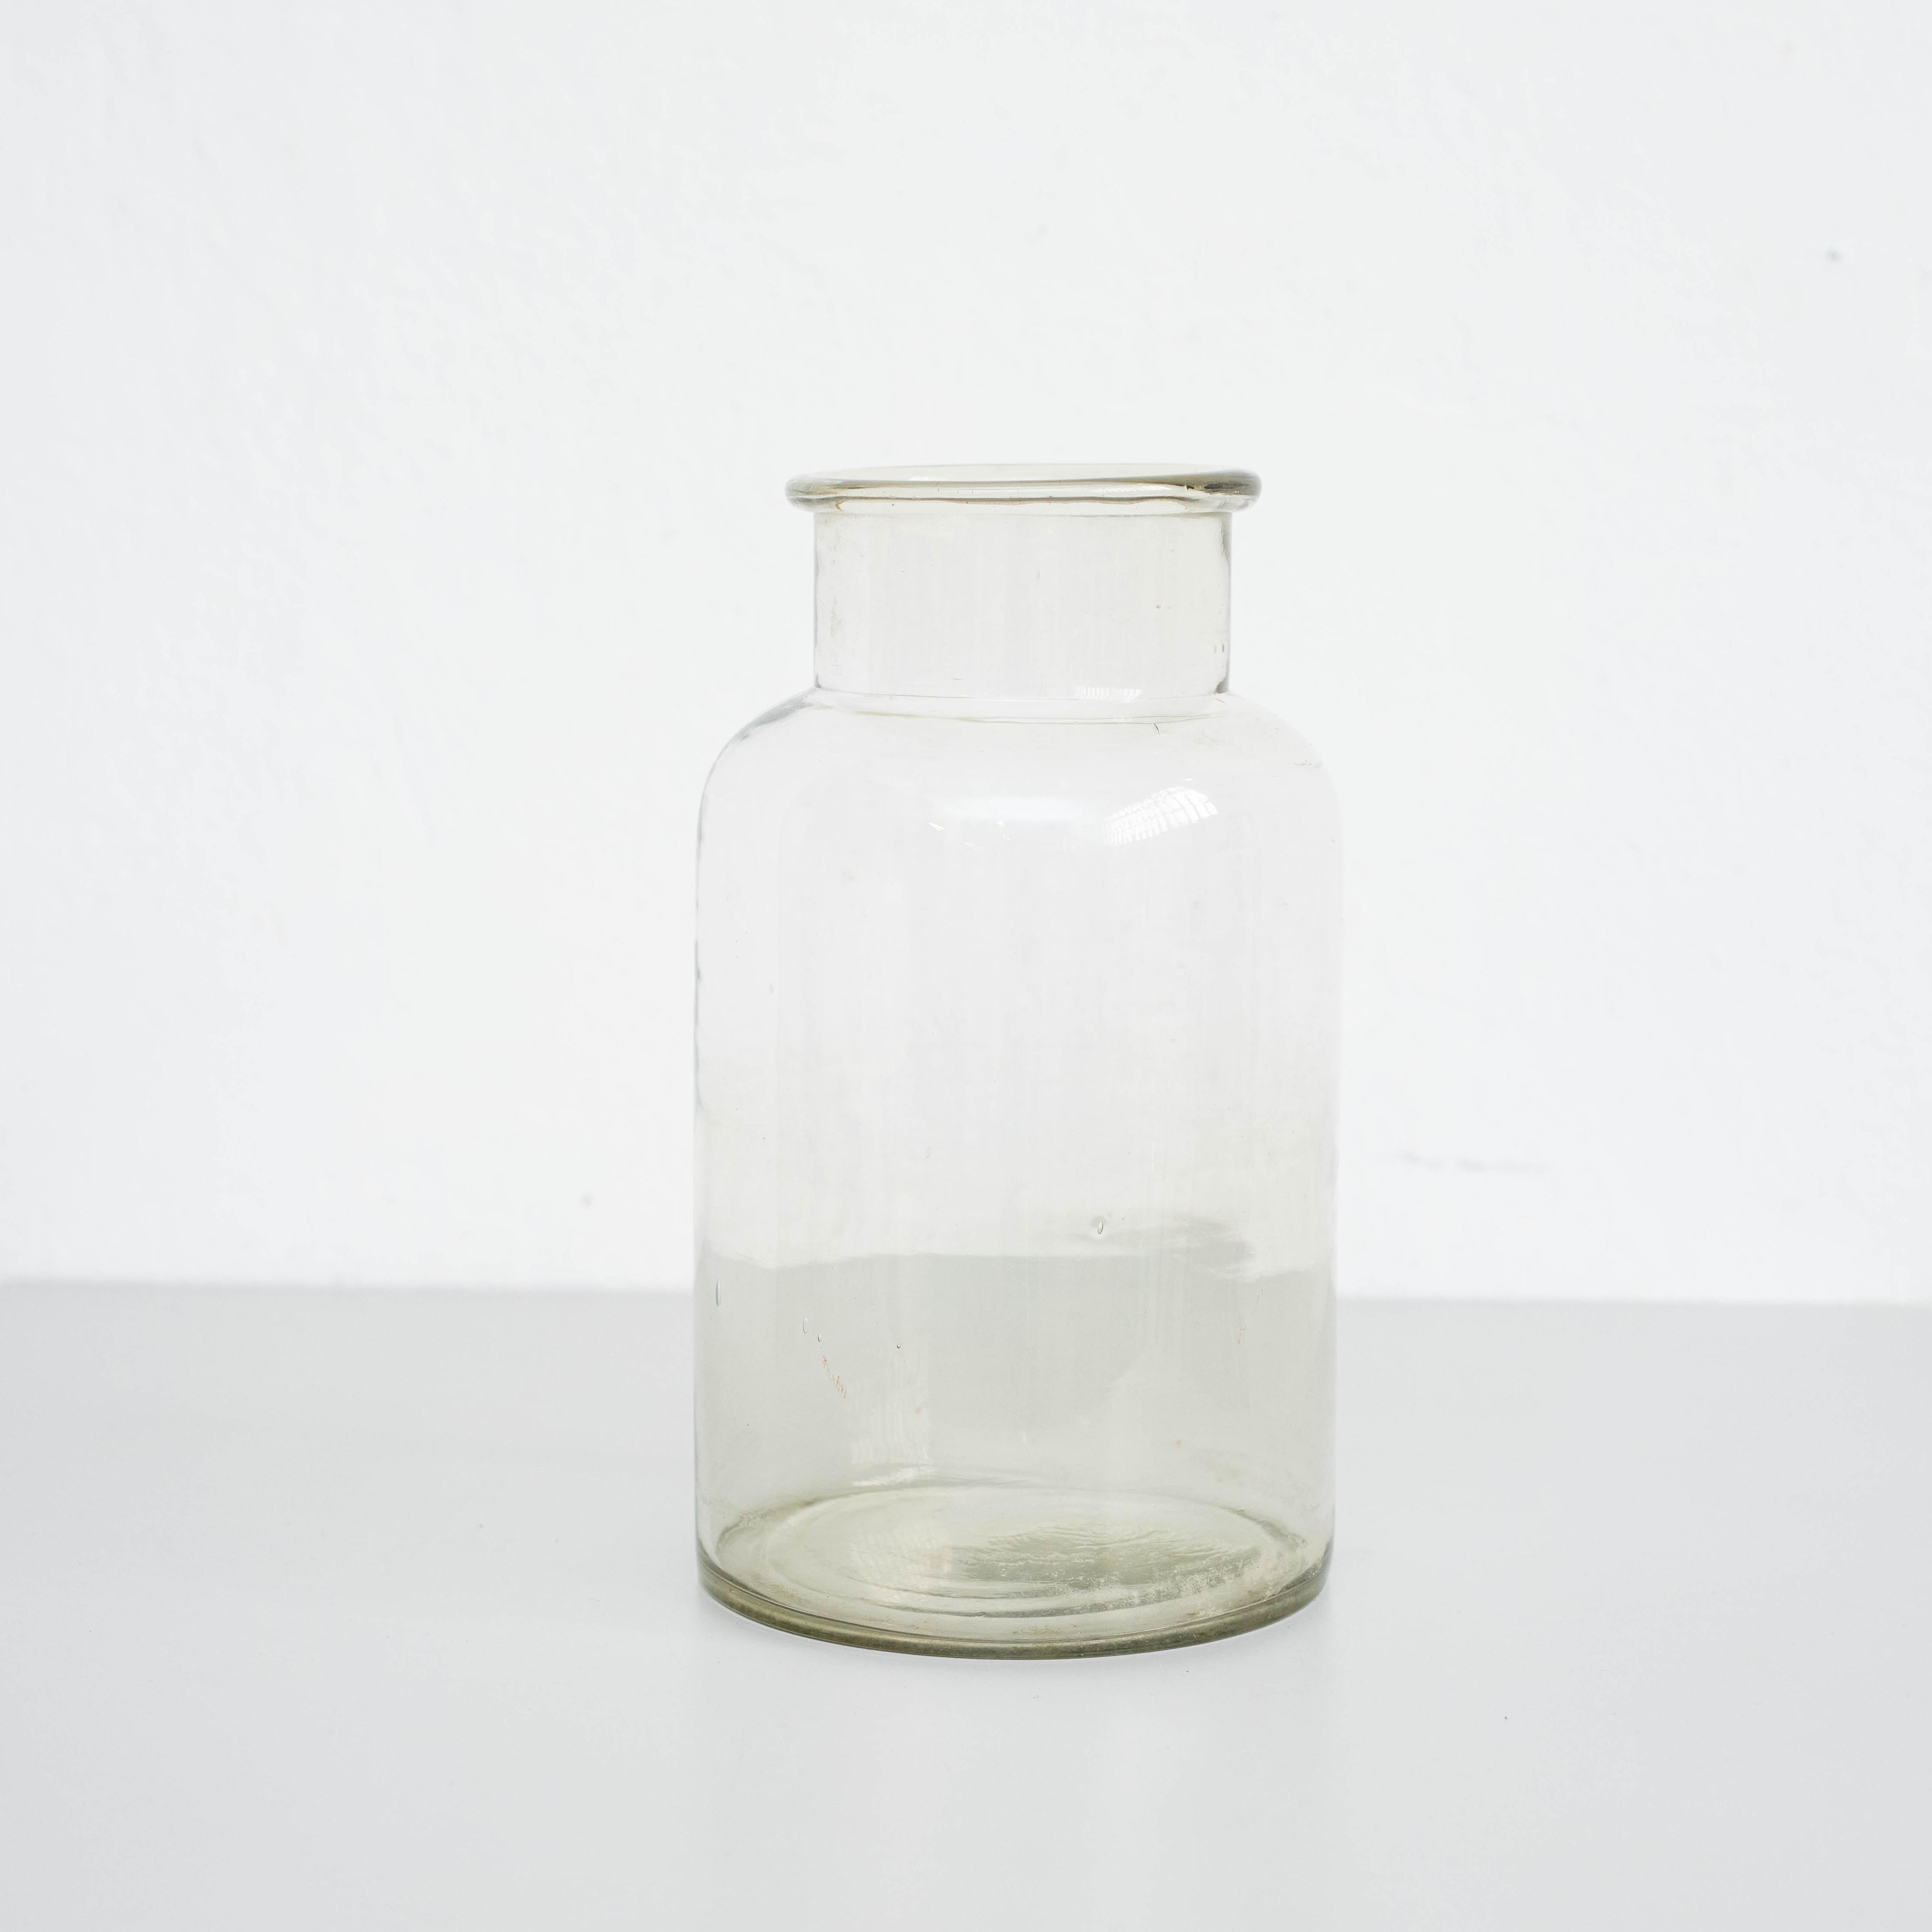 Vase en verre

Fabriqué en Espagne, vers 1950.

En état d'origine, avec de légères usures dues à l'âge et à l'utilisation, préservant une belle patine.

Matériaux :
Verre

Dimensions :
H 36 cm
Ø 18 cm.